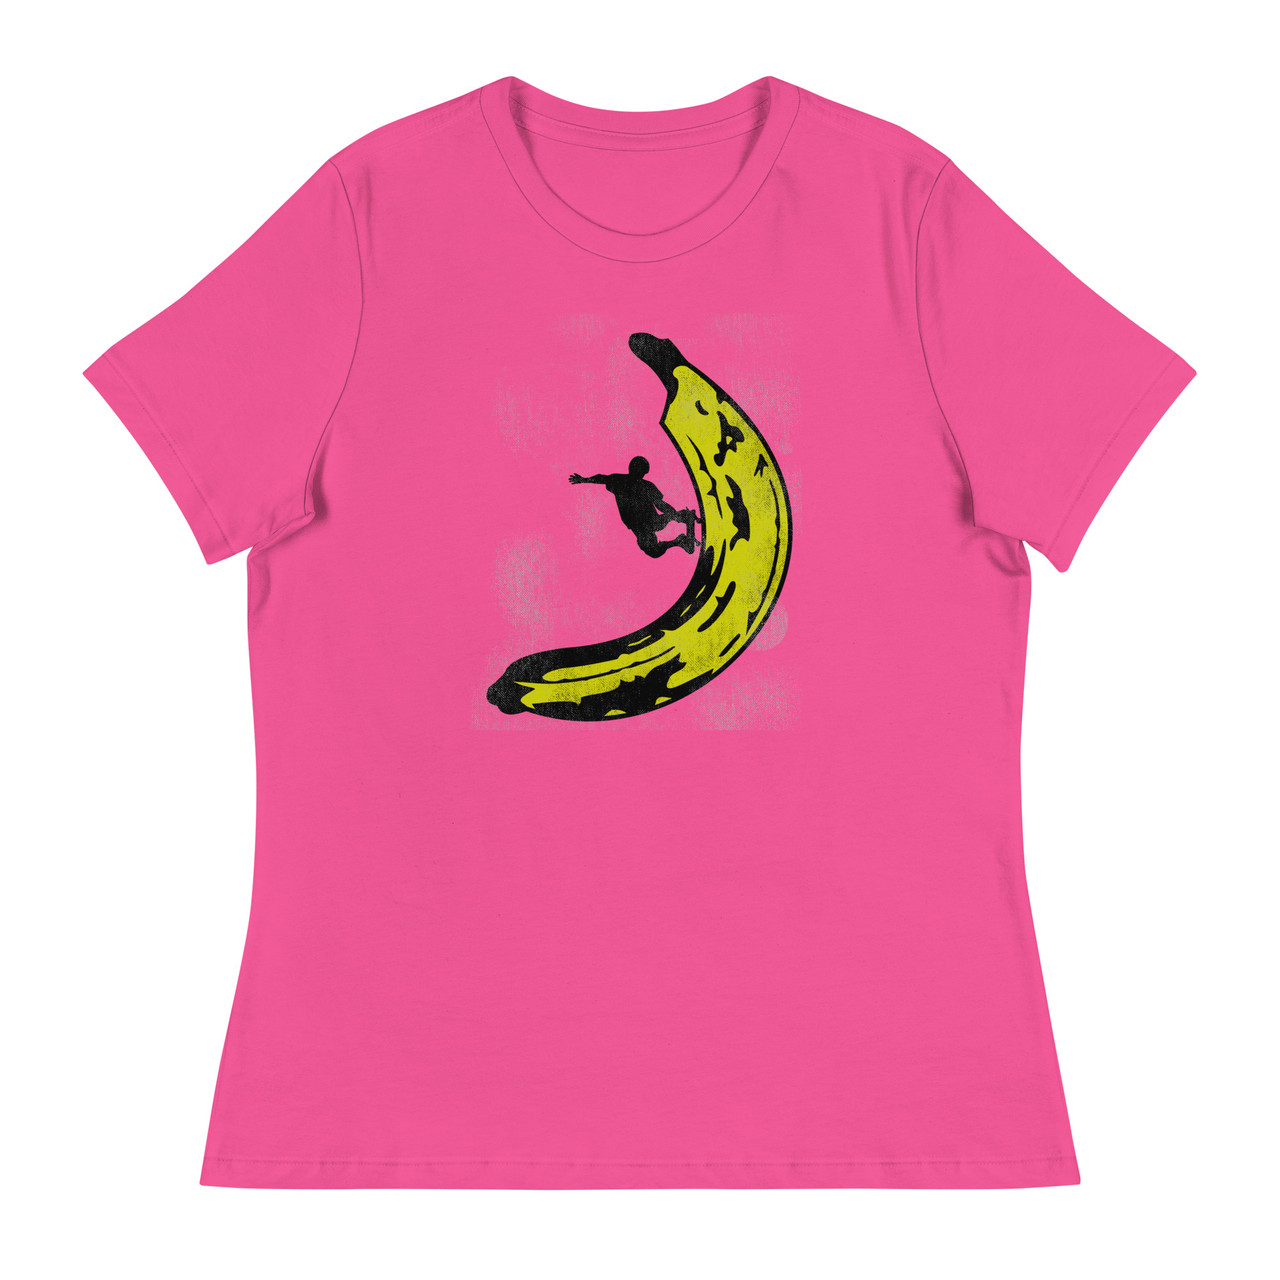 Banana Skateboard Women's Relaxed T-Shirt - Bella + Canvas 6400 